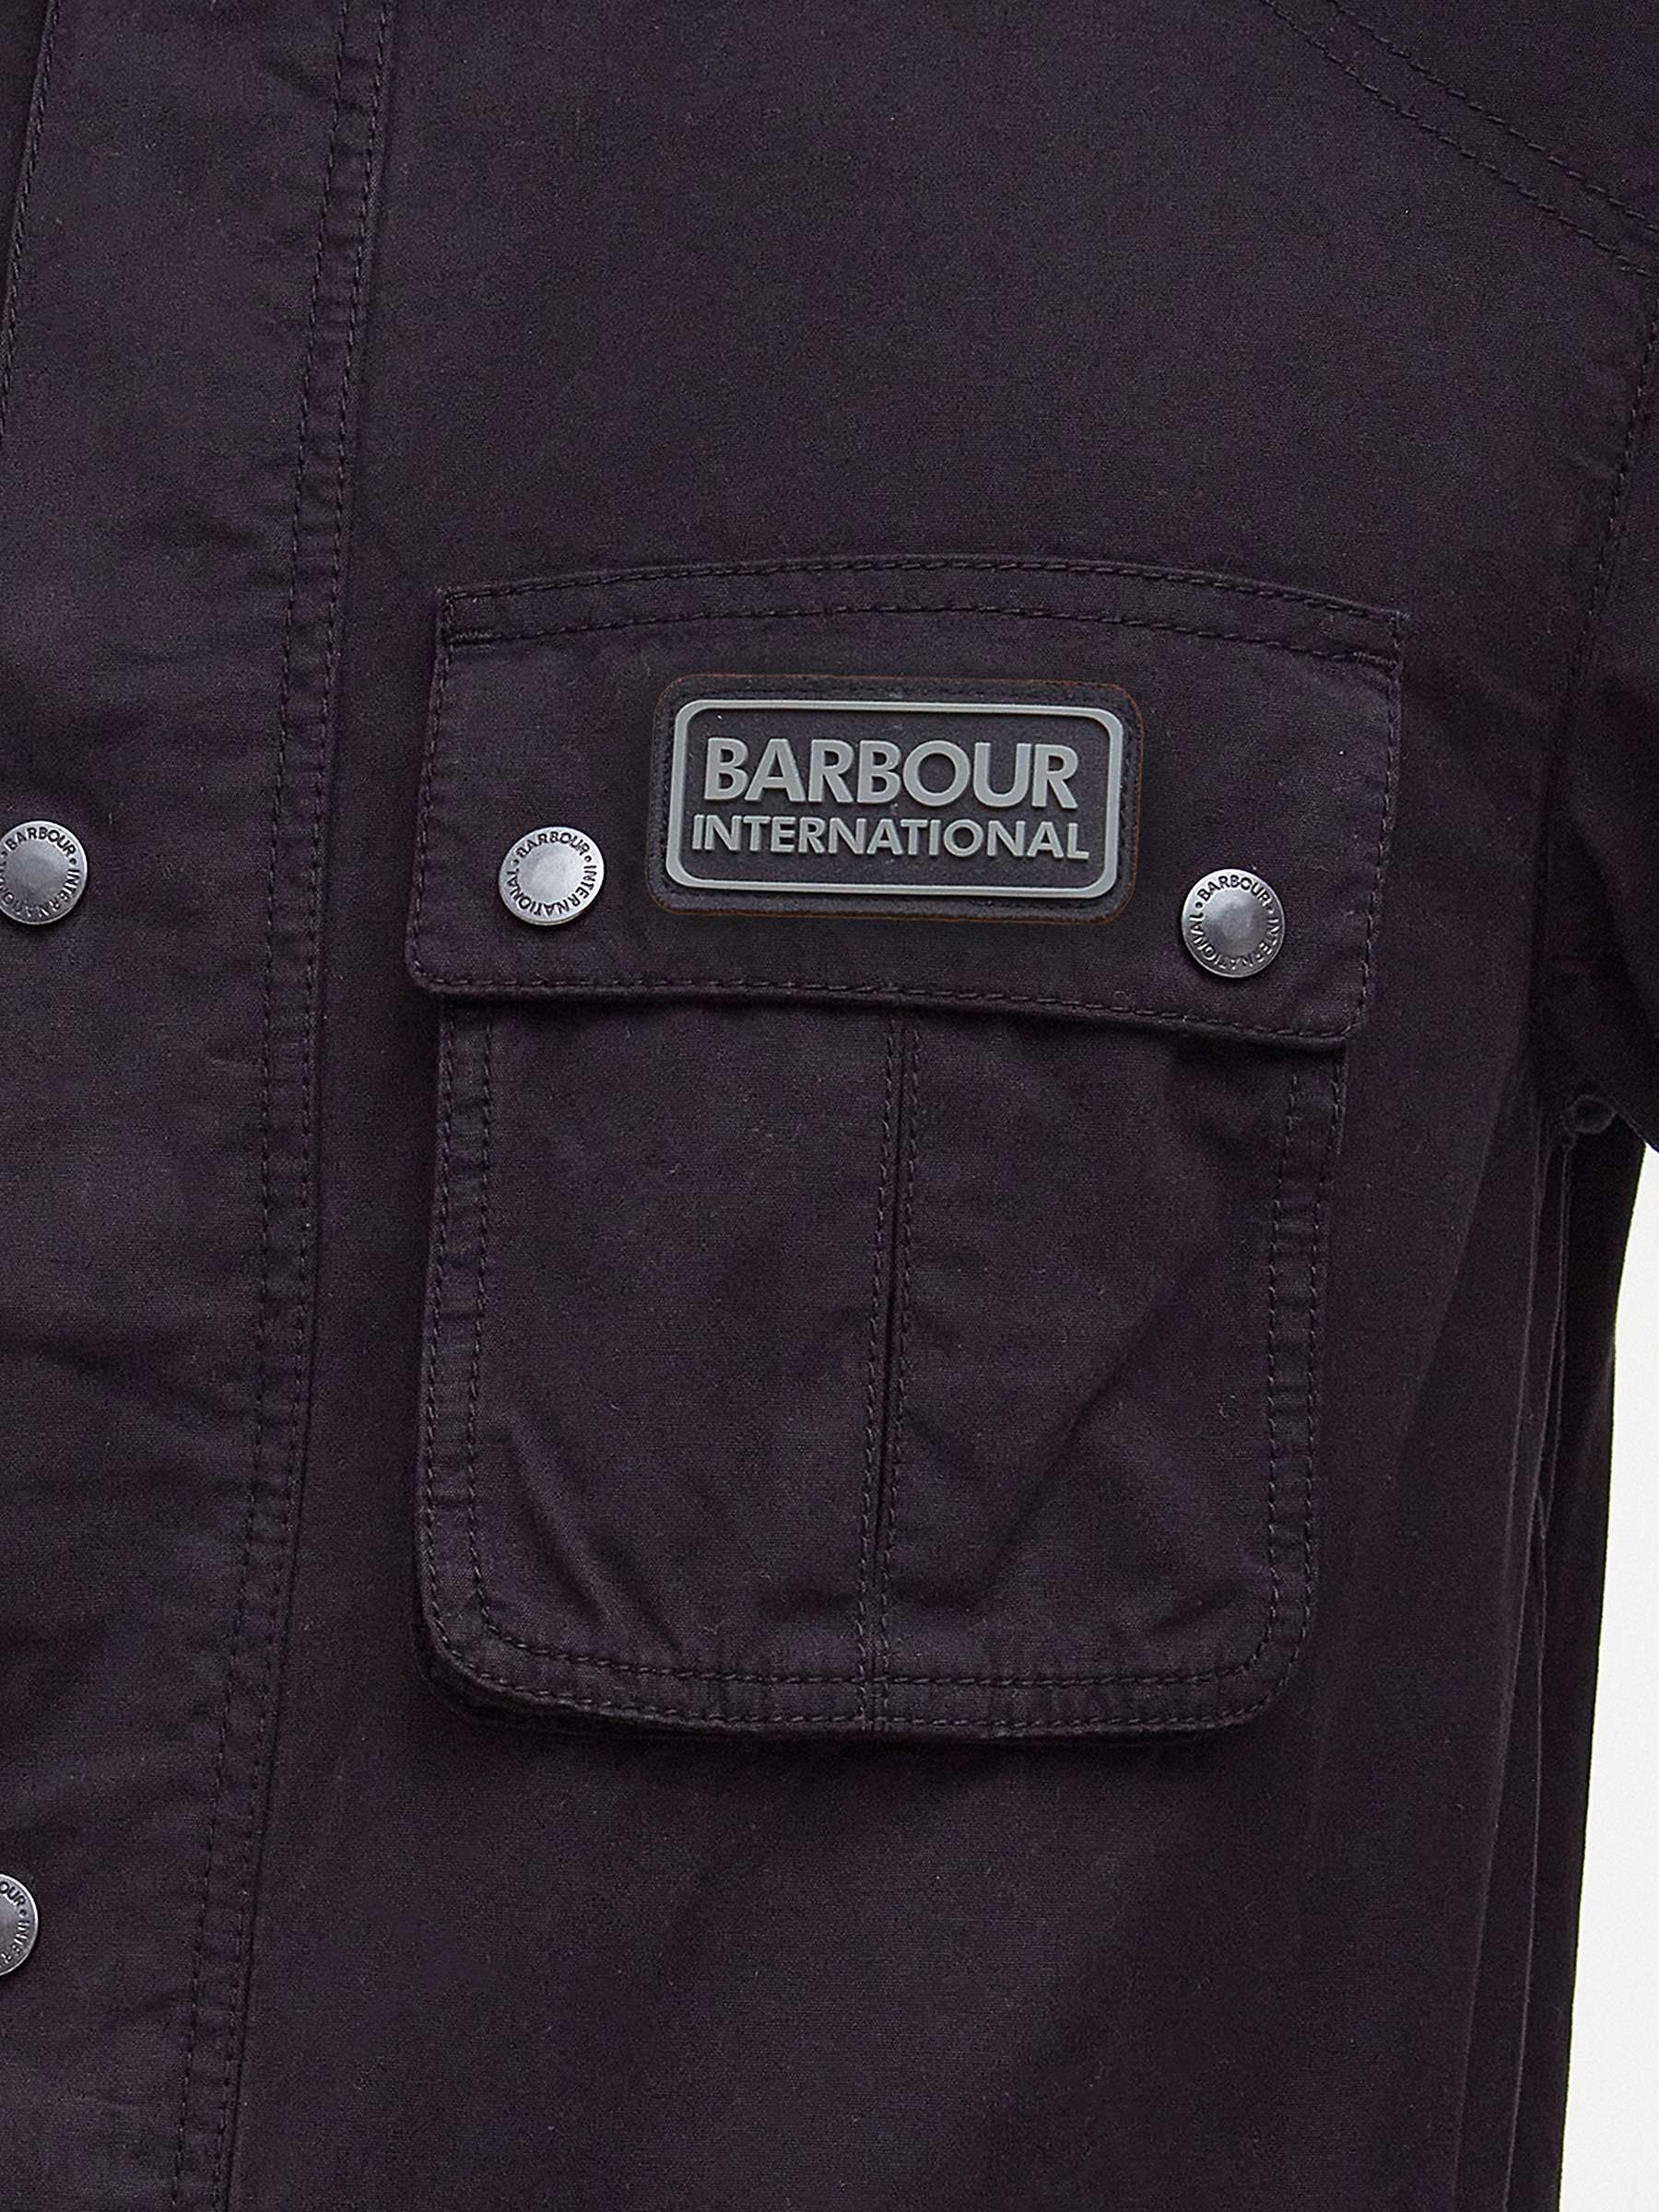 Buy Barbour International Tourer Barwell Casual Jacket, Black Online at johnlewis.com